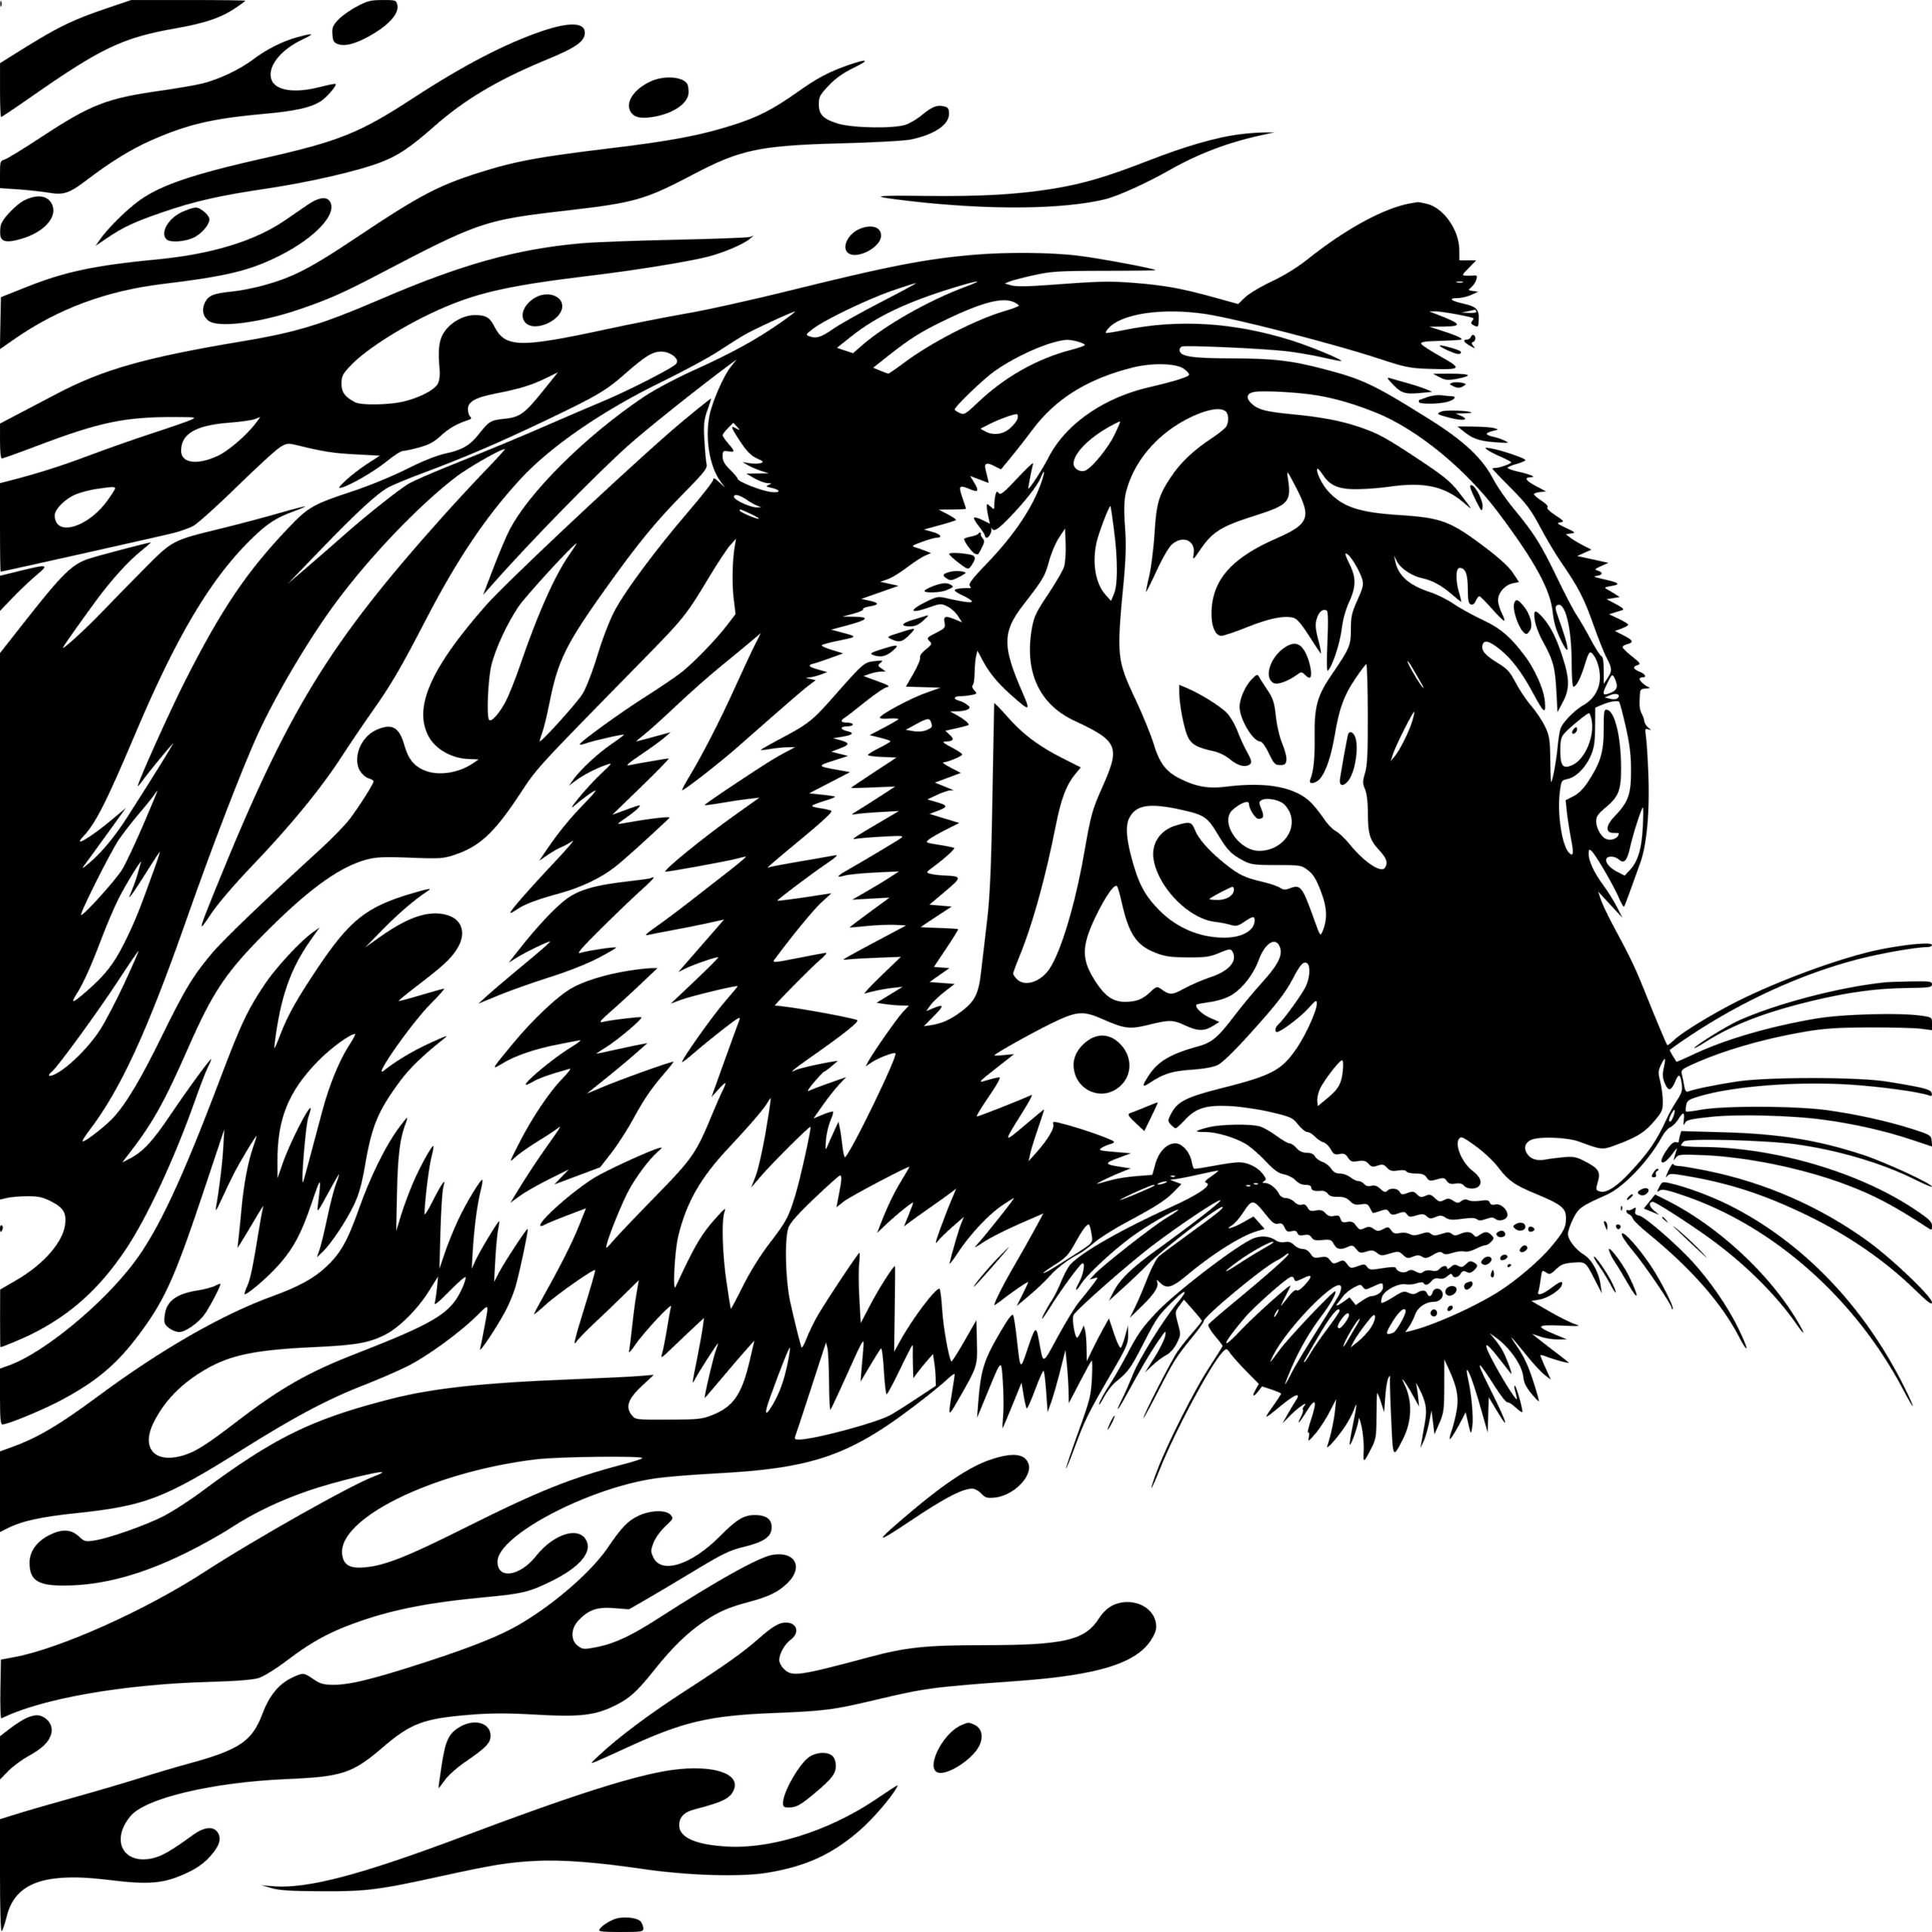 Tiger Stripes Clipart in Illustrator, SVG, JPG, EPS, PNG